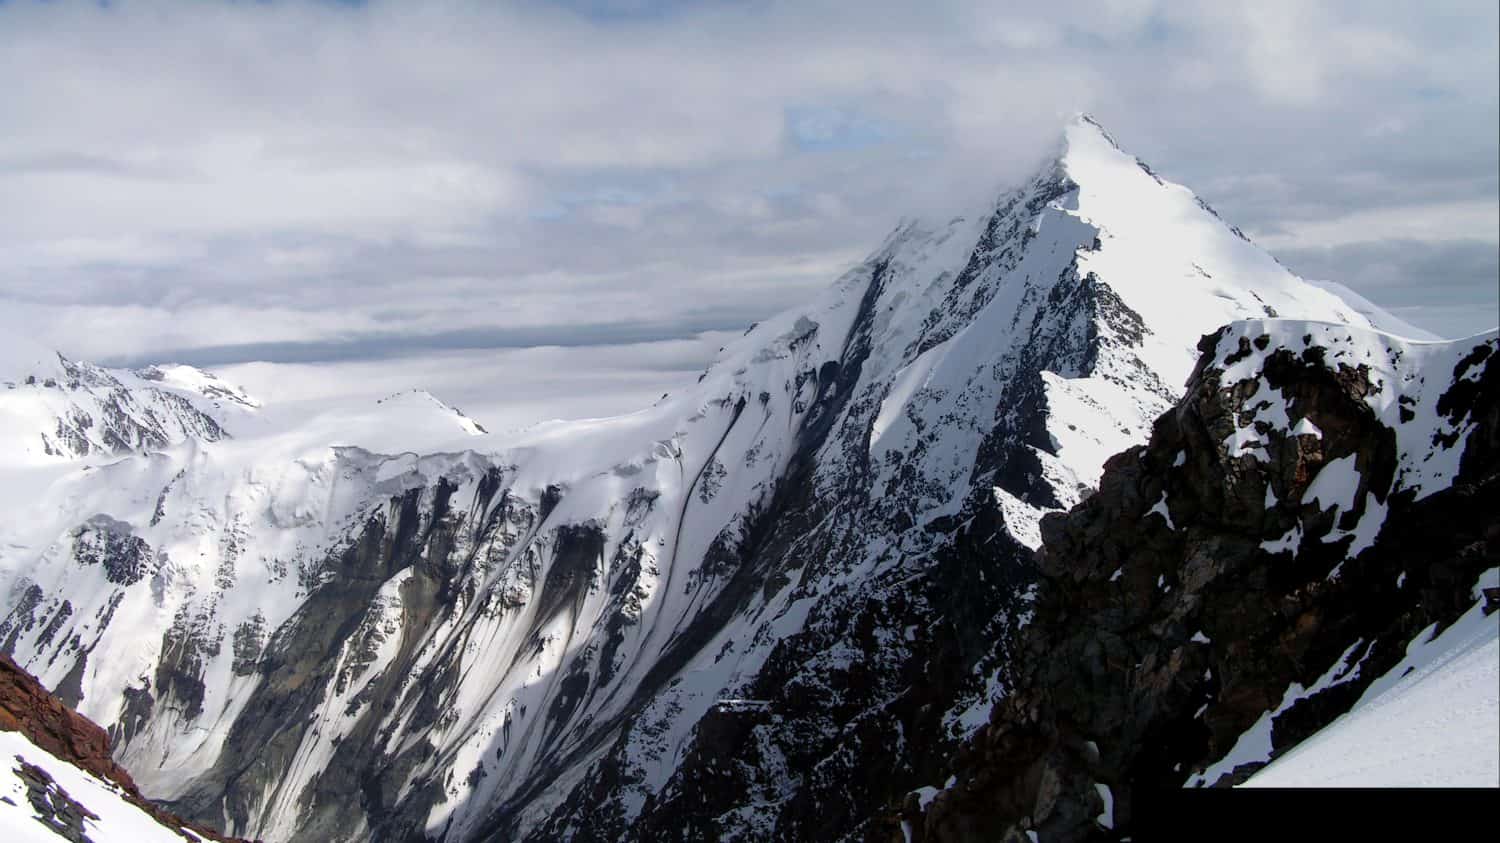 Caucasus, Ossetia. Genaldon gorge. Mount Dzhimara from the north.